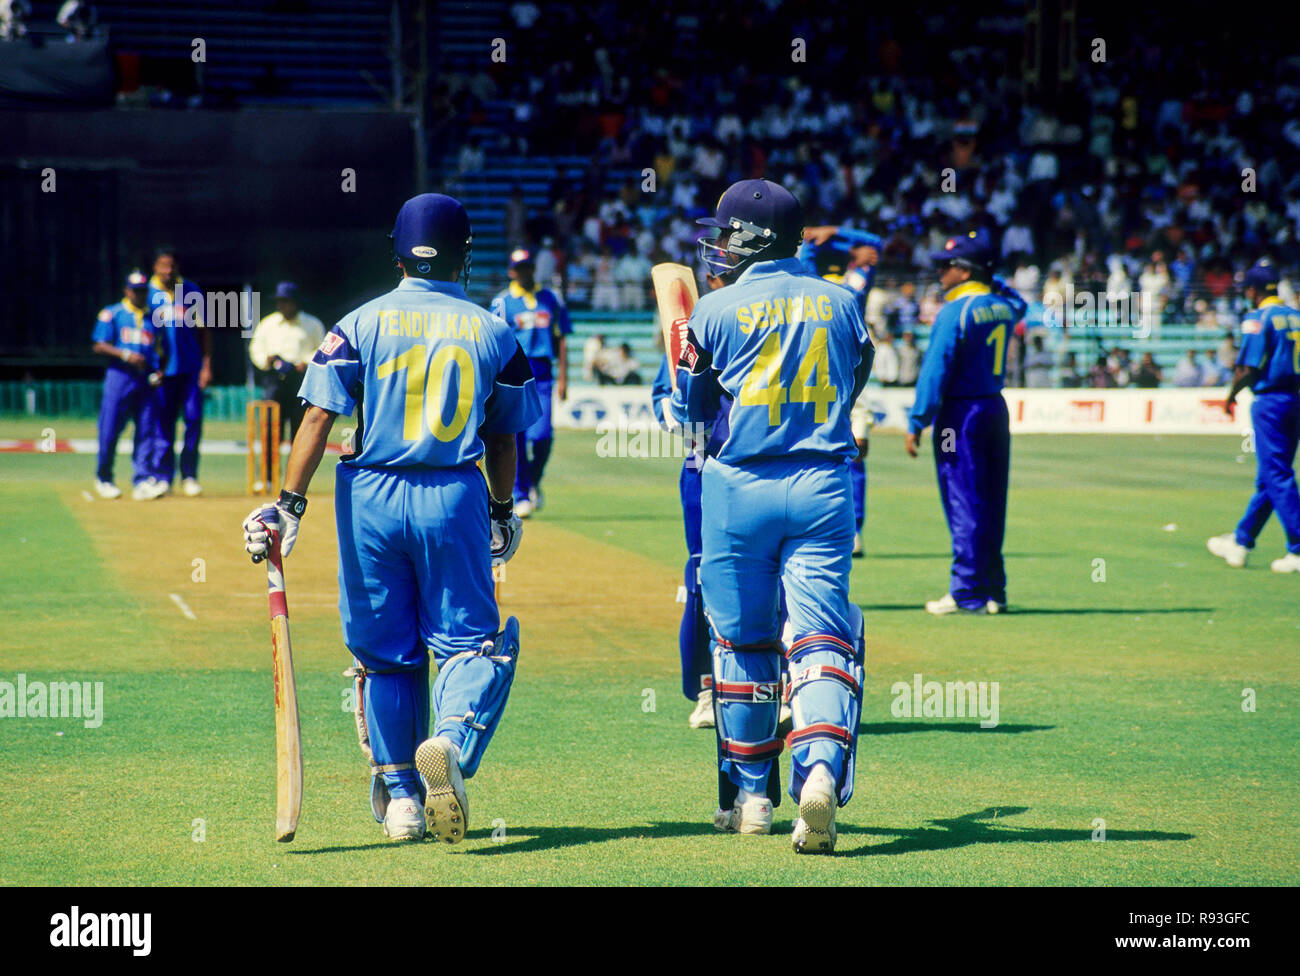 Indische Cricket Spieler tendulkar und Sehwag zu Fuß in Richtung Pitch, Indien, KEINE MR Stockfoto